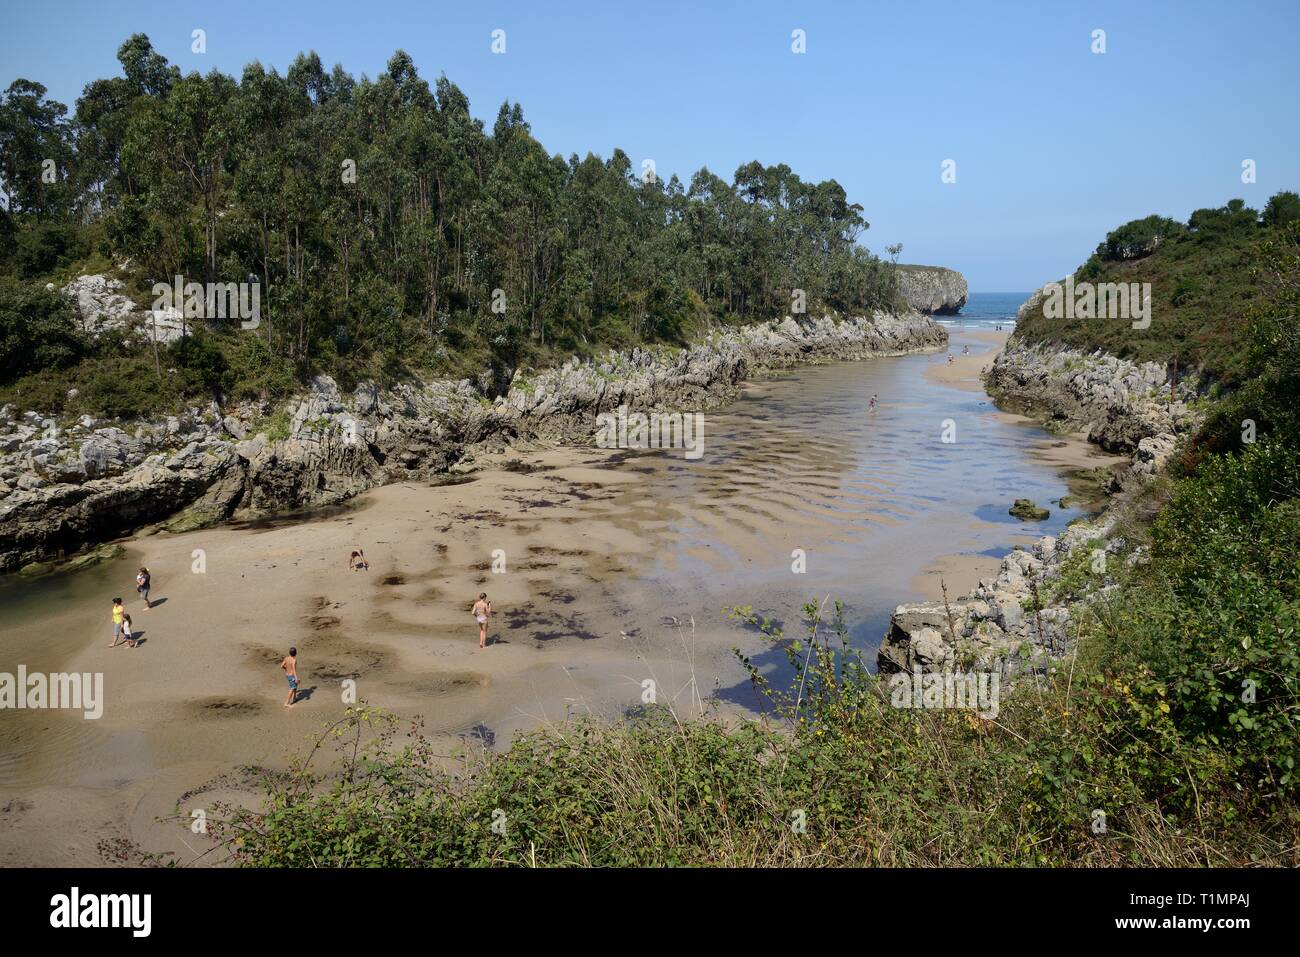 Playa de Guadamia, une plage étroite à l'embouchure du fleuve Rio Guadamia, Llames de Pria, Asturias, Espagne, août. Banque D'Images